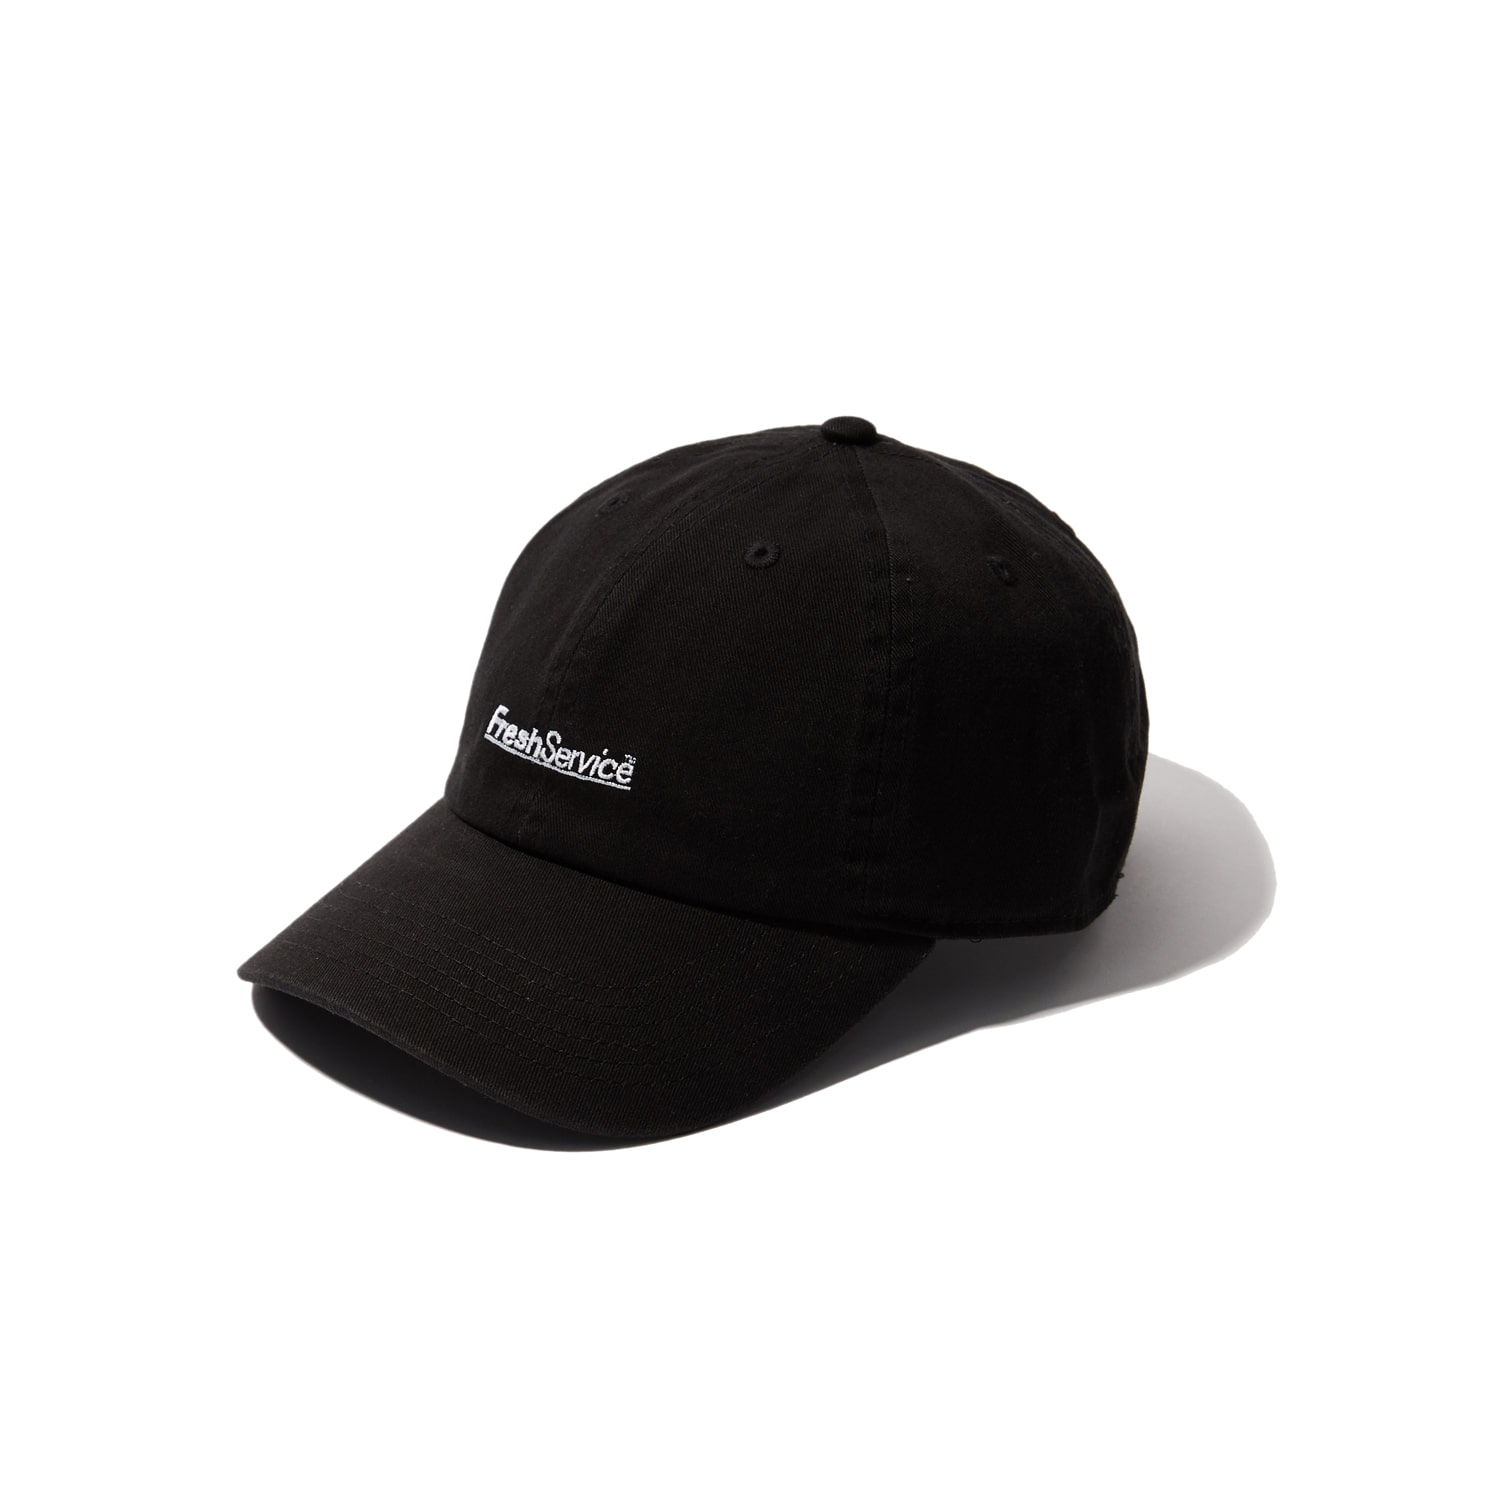 CORPORATE CAP (BLACK)